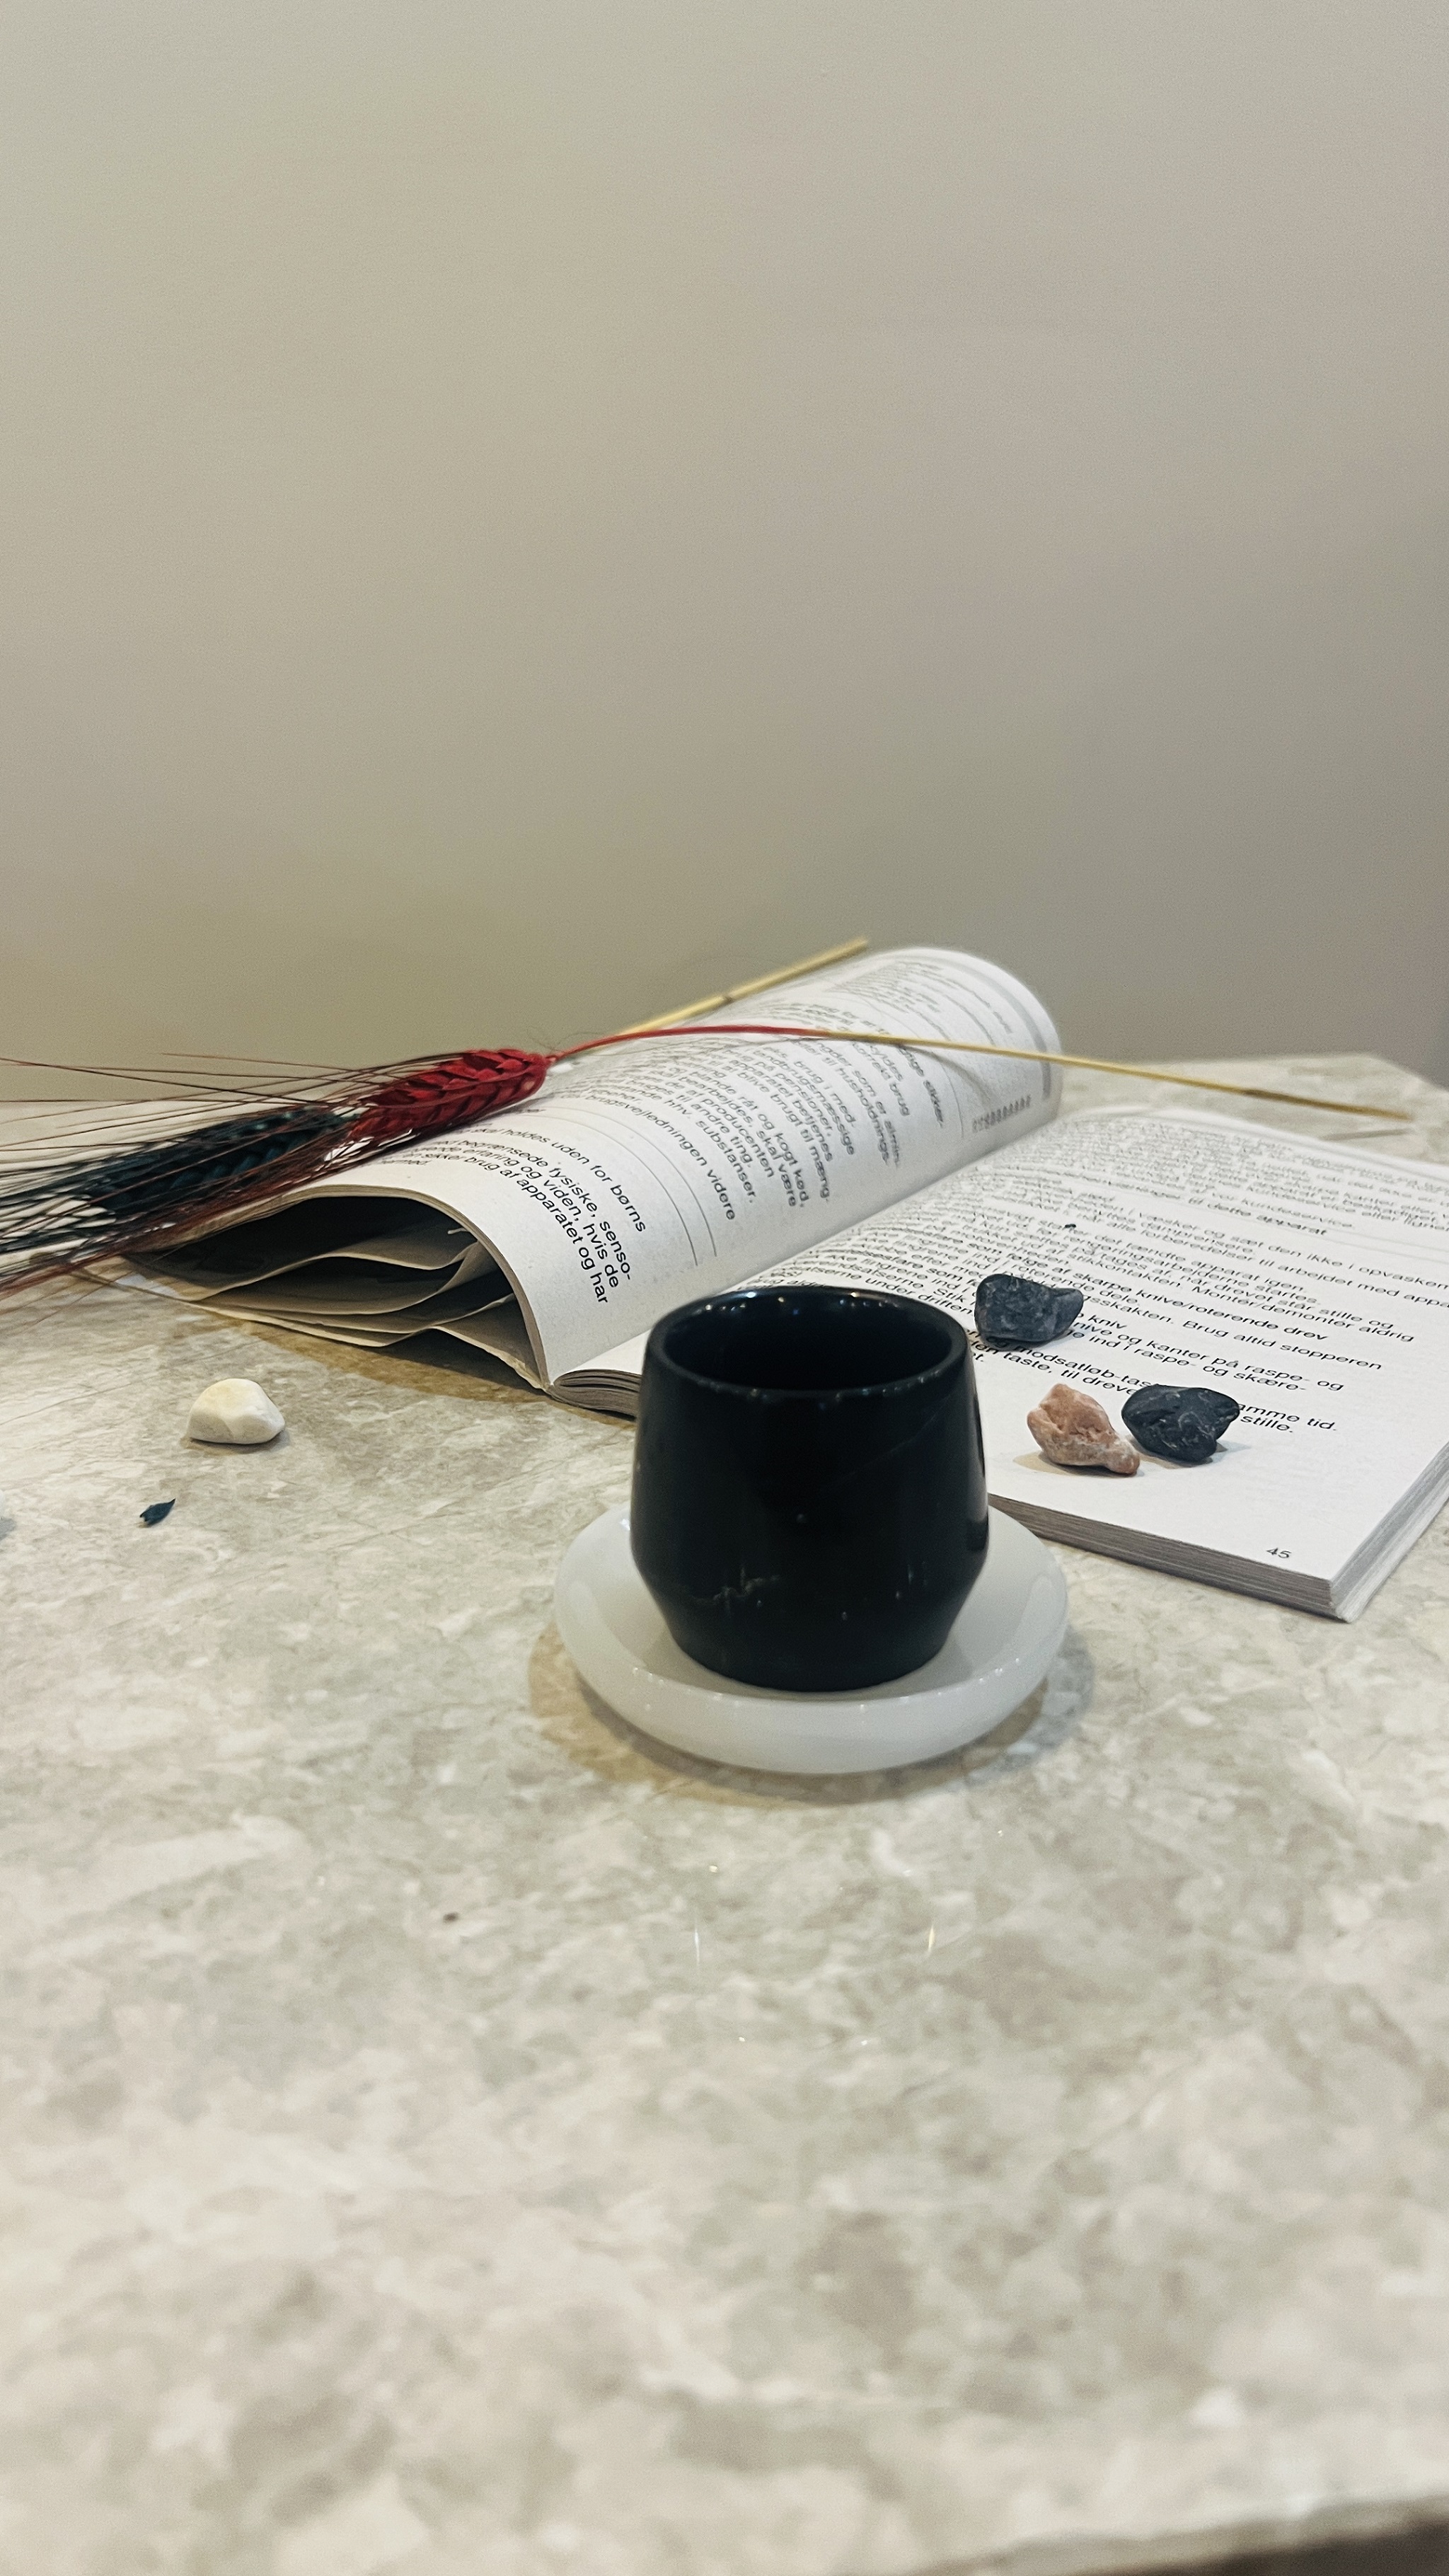 کاپ قهوه /شات قهوه مرمریت مشکی  + نعلبکی سنگی مرمر (کاپ قهوه خوری سنگی/ شات قهوه خوری سنگی )/فنجان قهوه کد محصول Ono8042021